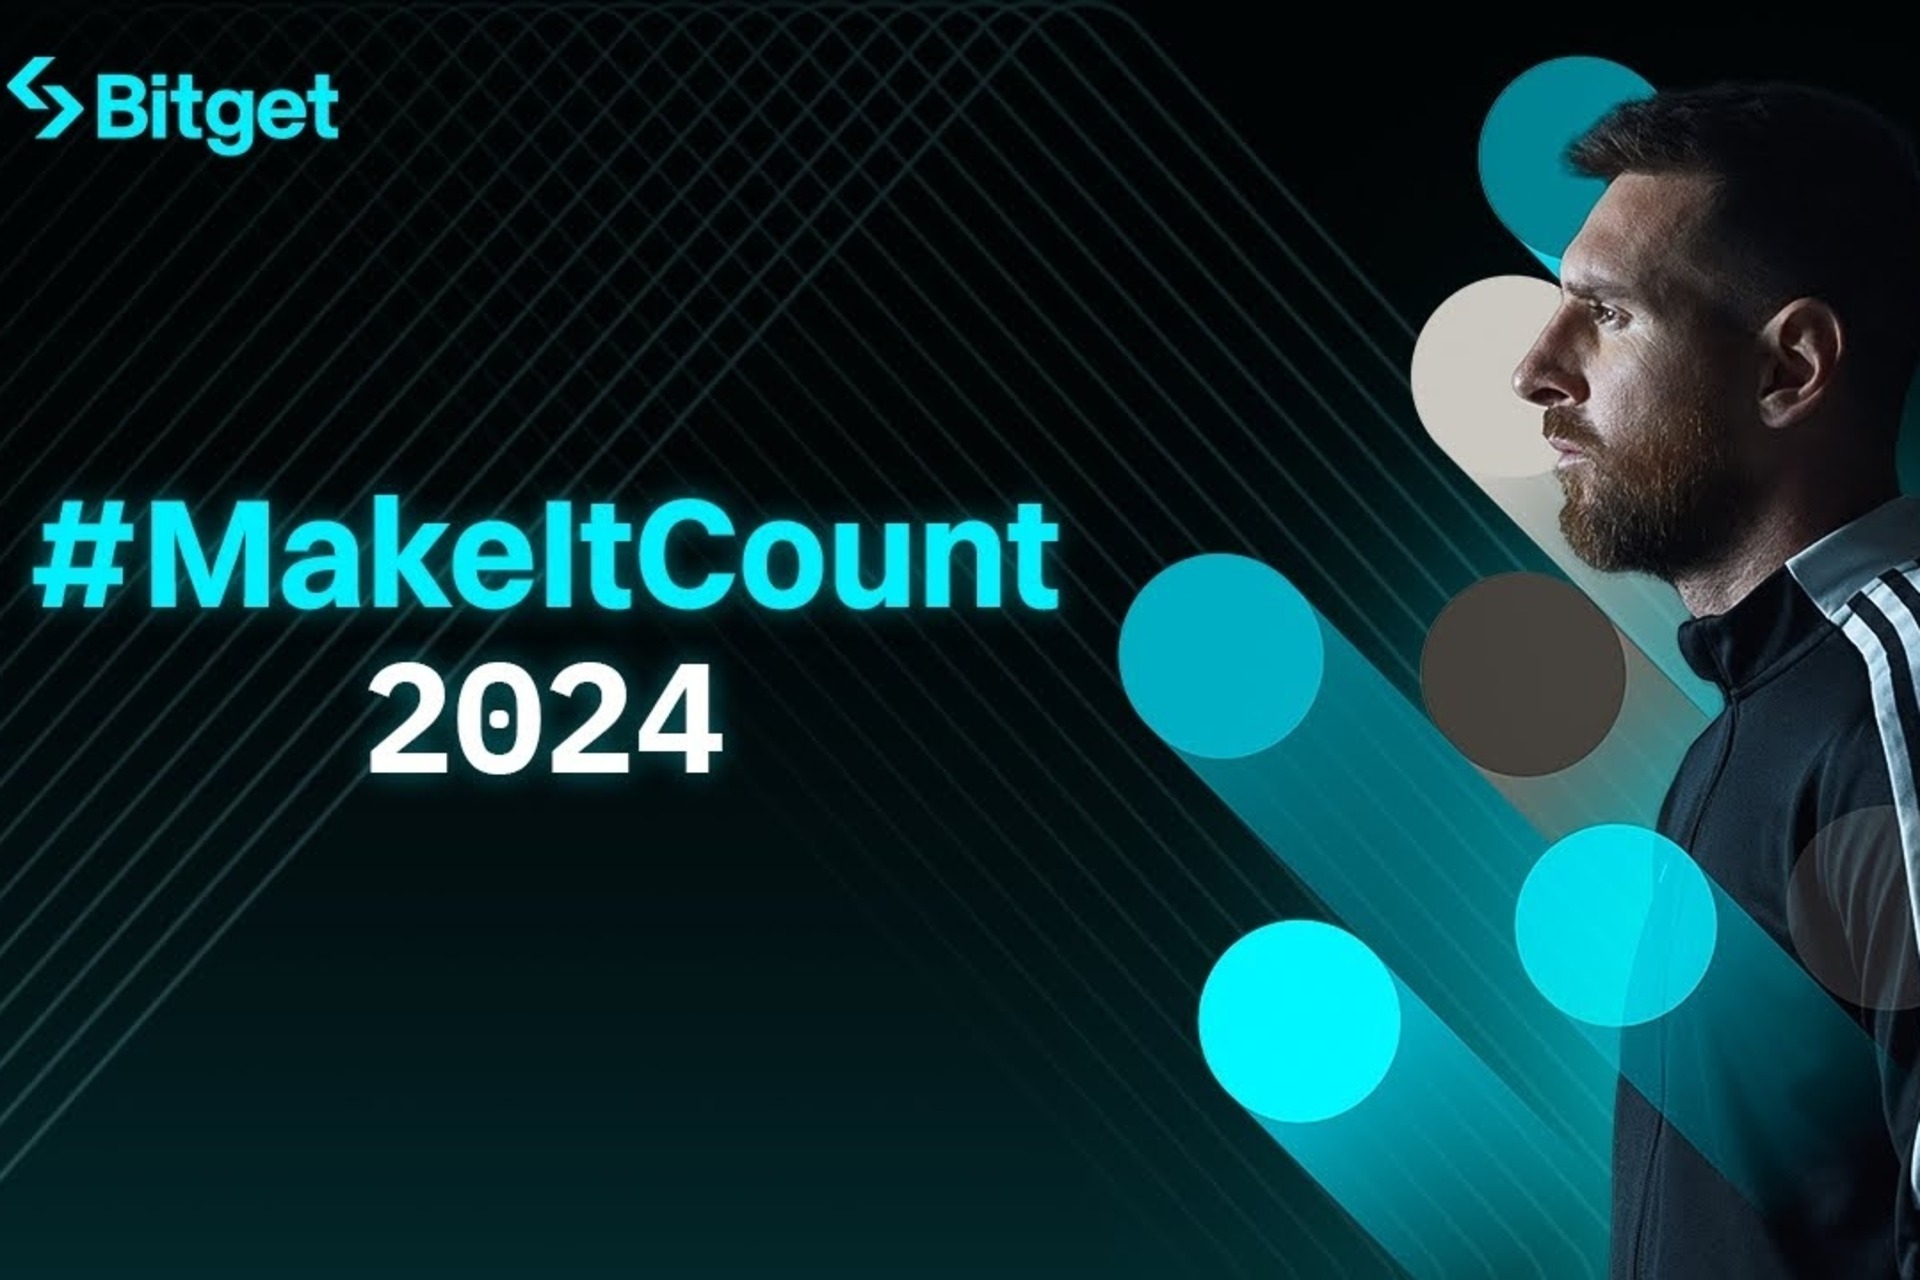 Лионель Месси: фильм #MakeItCount 2024 символизирует фундаментальные ценности, разделяемые криптобиржей Bitget и аргентинским футболистом